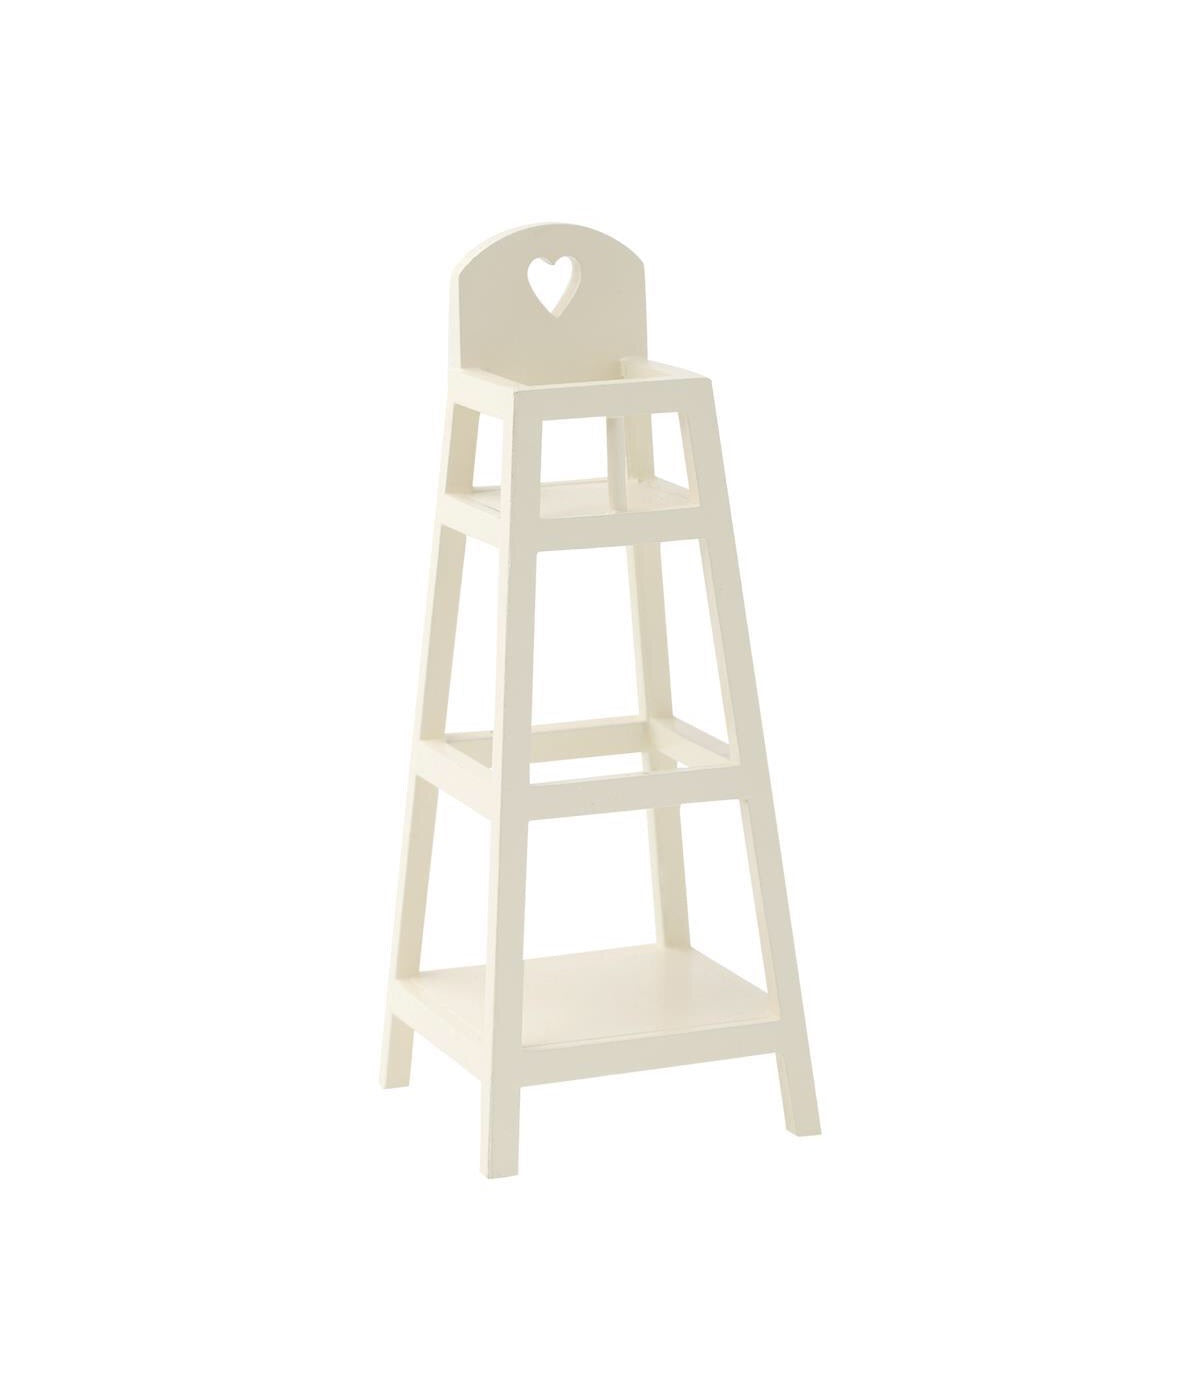 Maileg My High Chair - White: Dollhouse Furniture